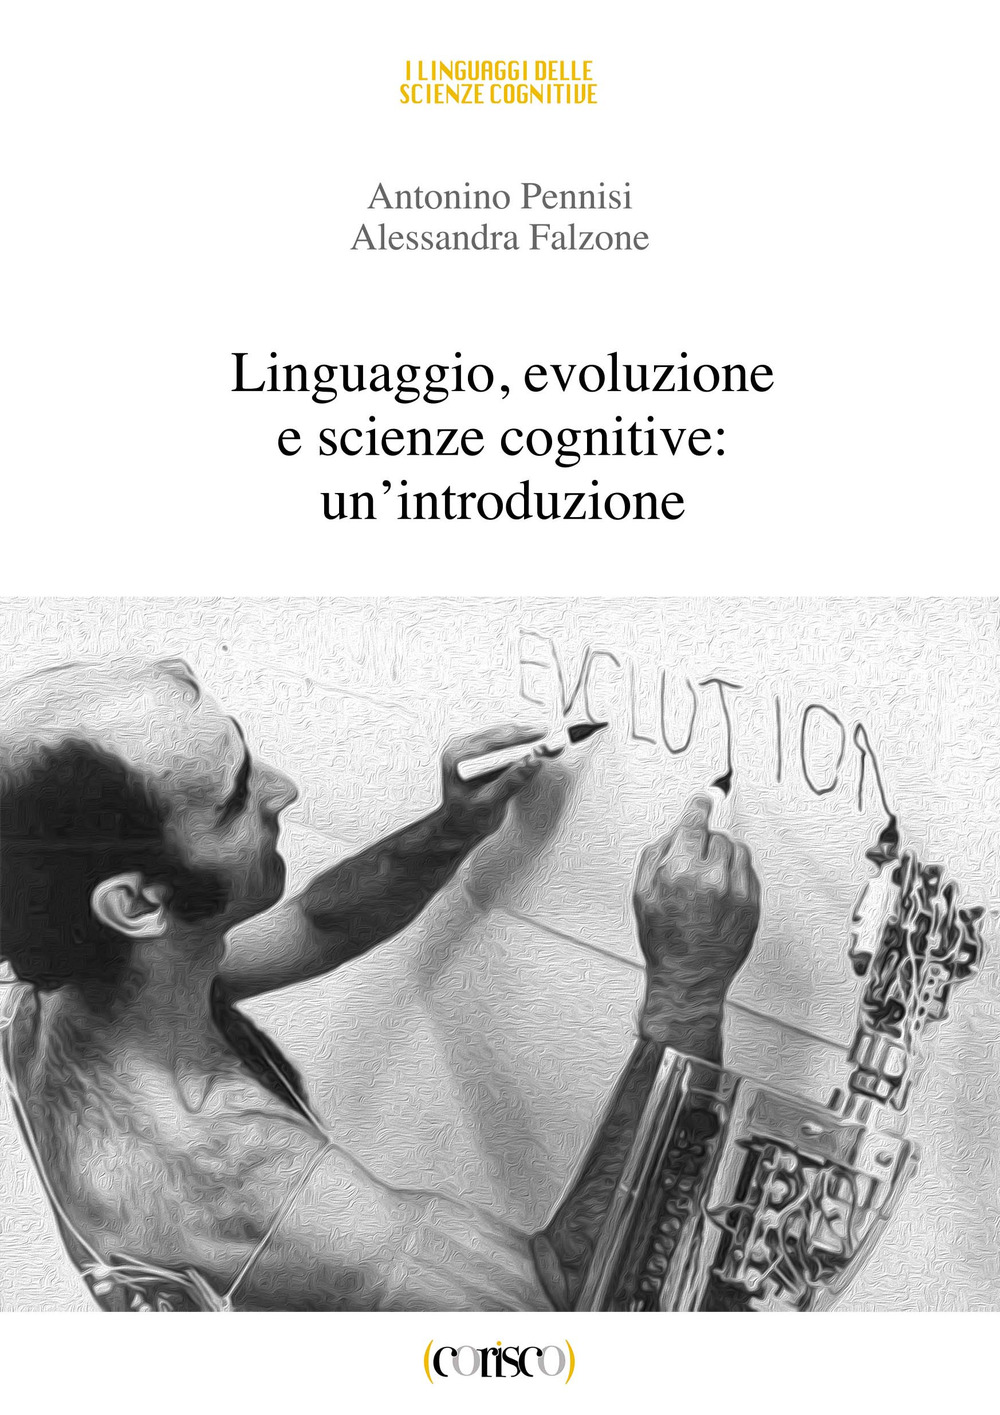 Linguaggio, evoluzione e scienze cognitive: un'introduzione